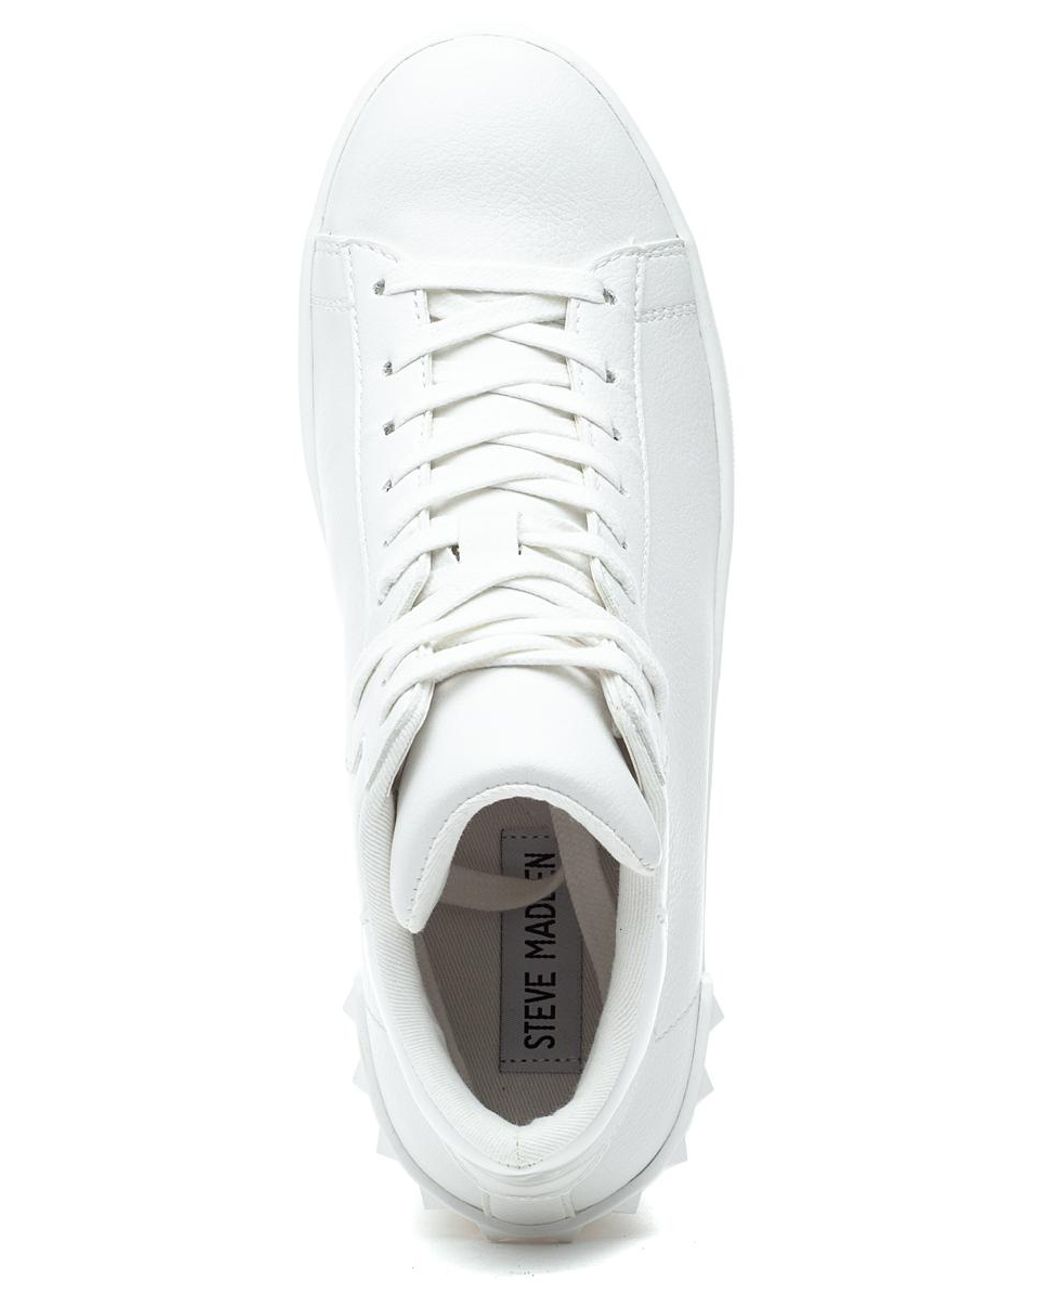 Steve Madden Leather Brix Sneaker White - Lyst